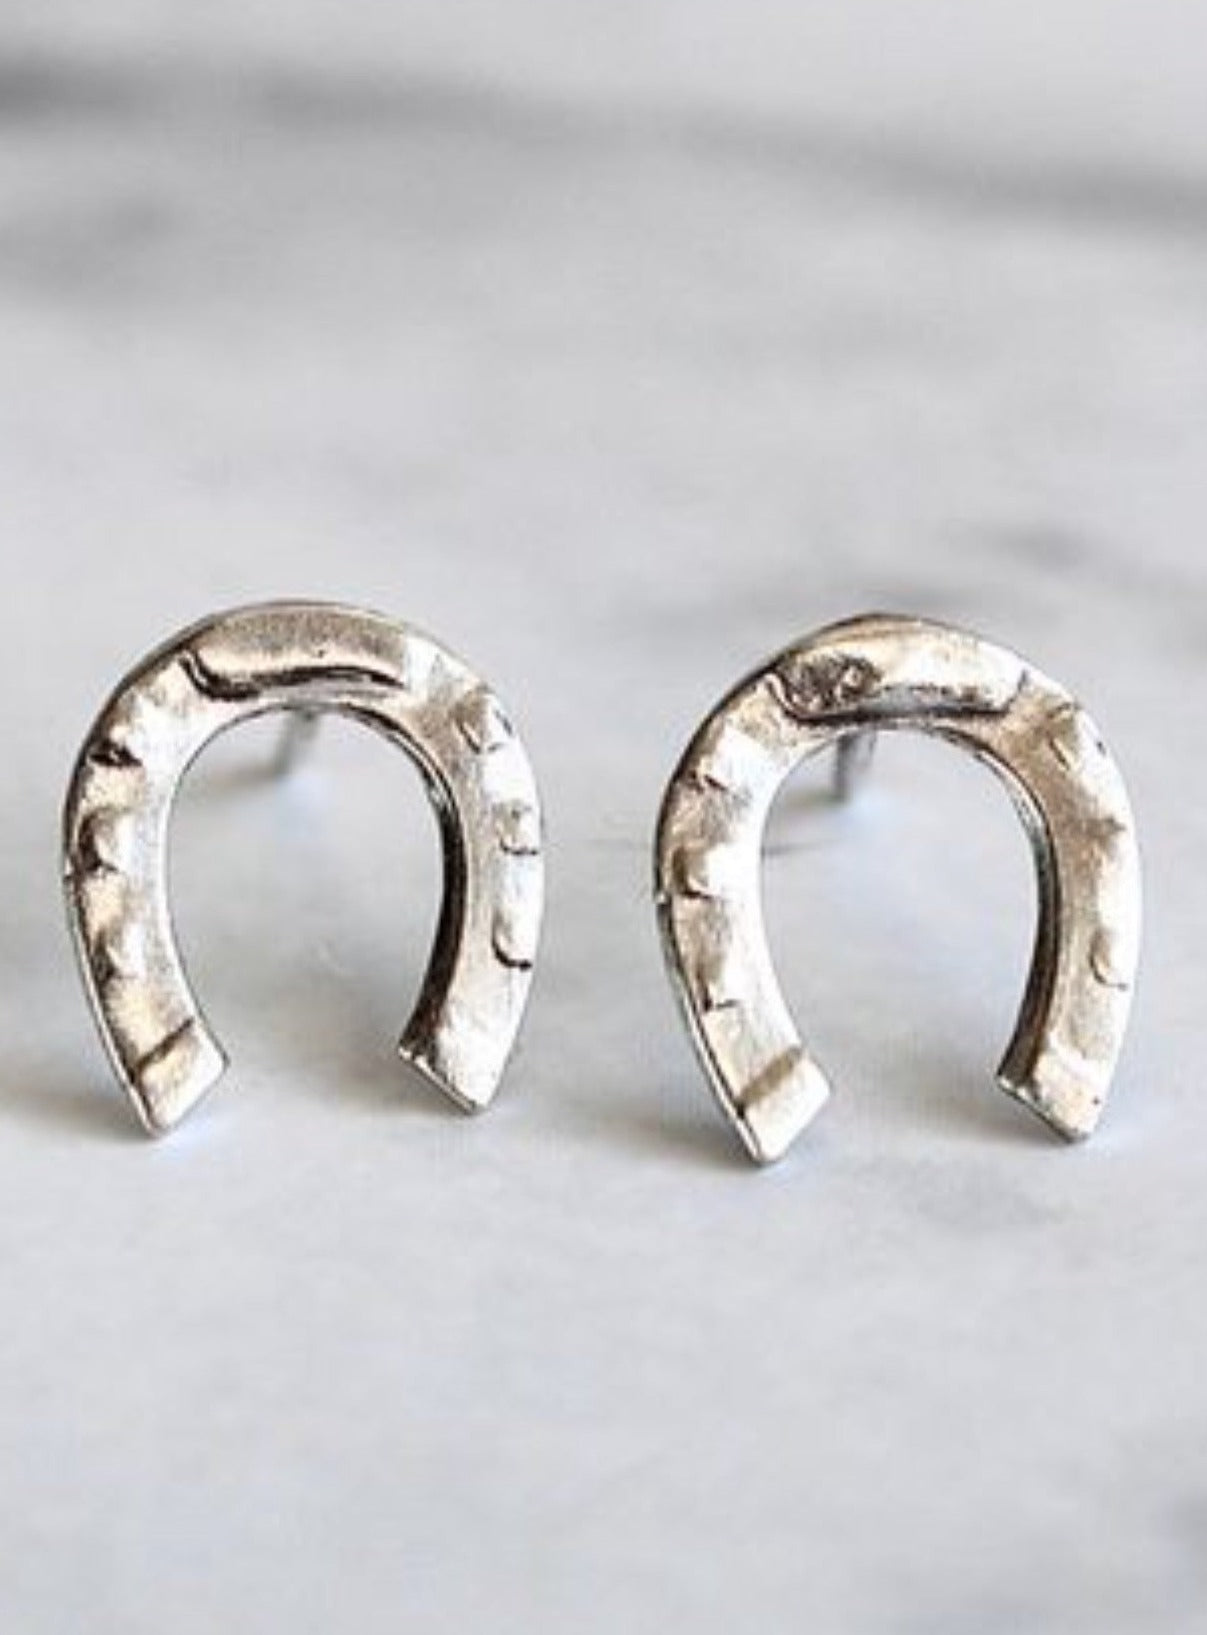 Silver Horseshoe earrings